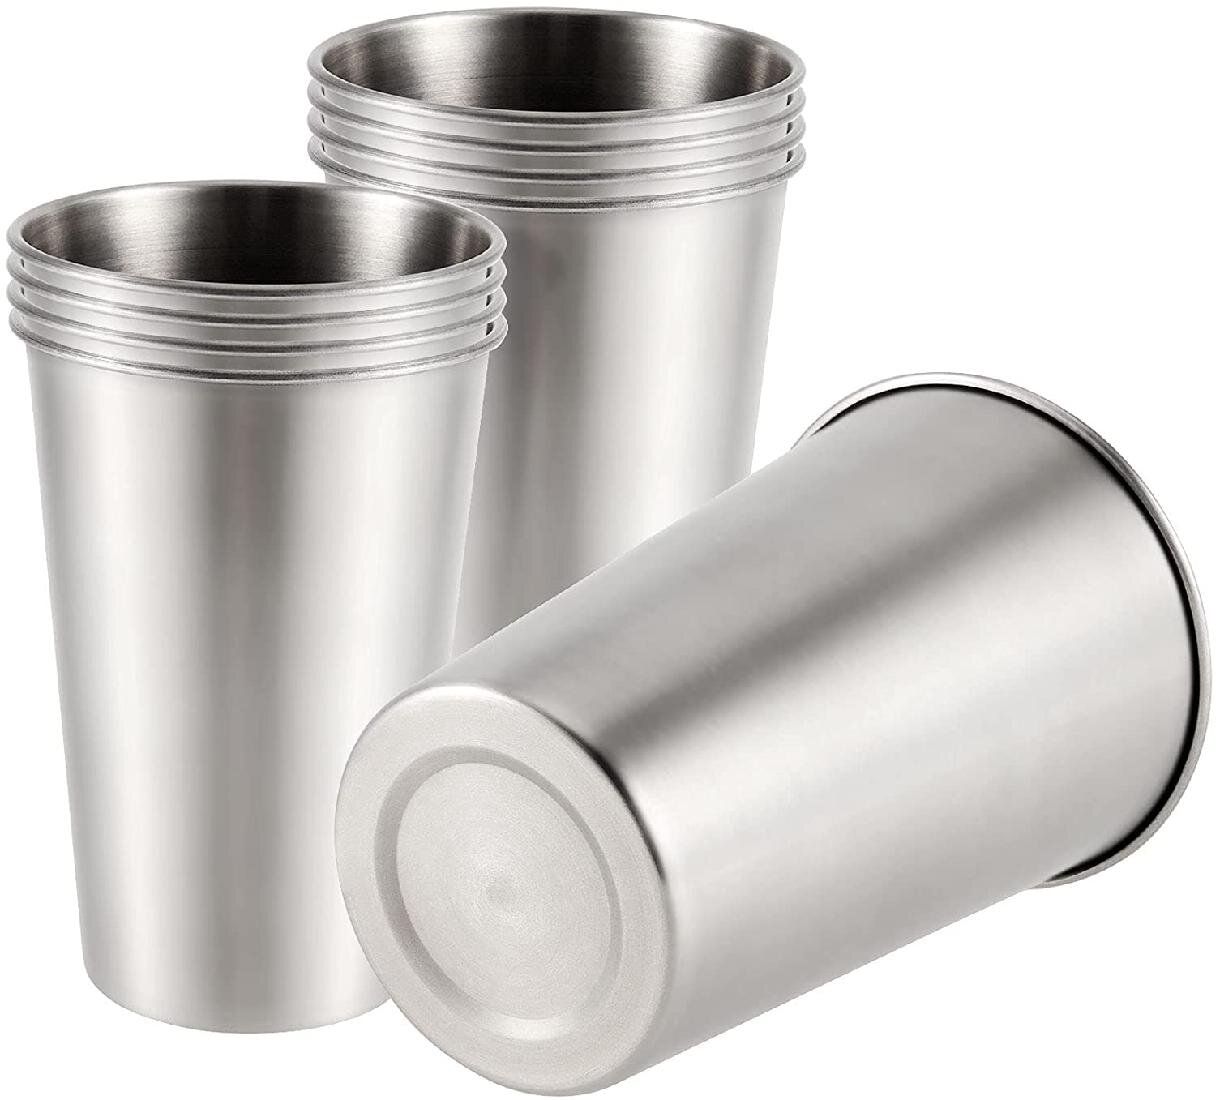 500ml Stainless Steel Pint Cups Beer Tumblers Coffee Mugs Stackable Juice Drink